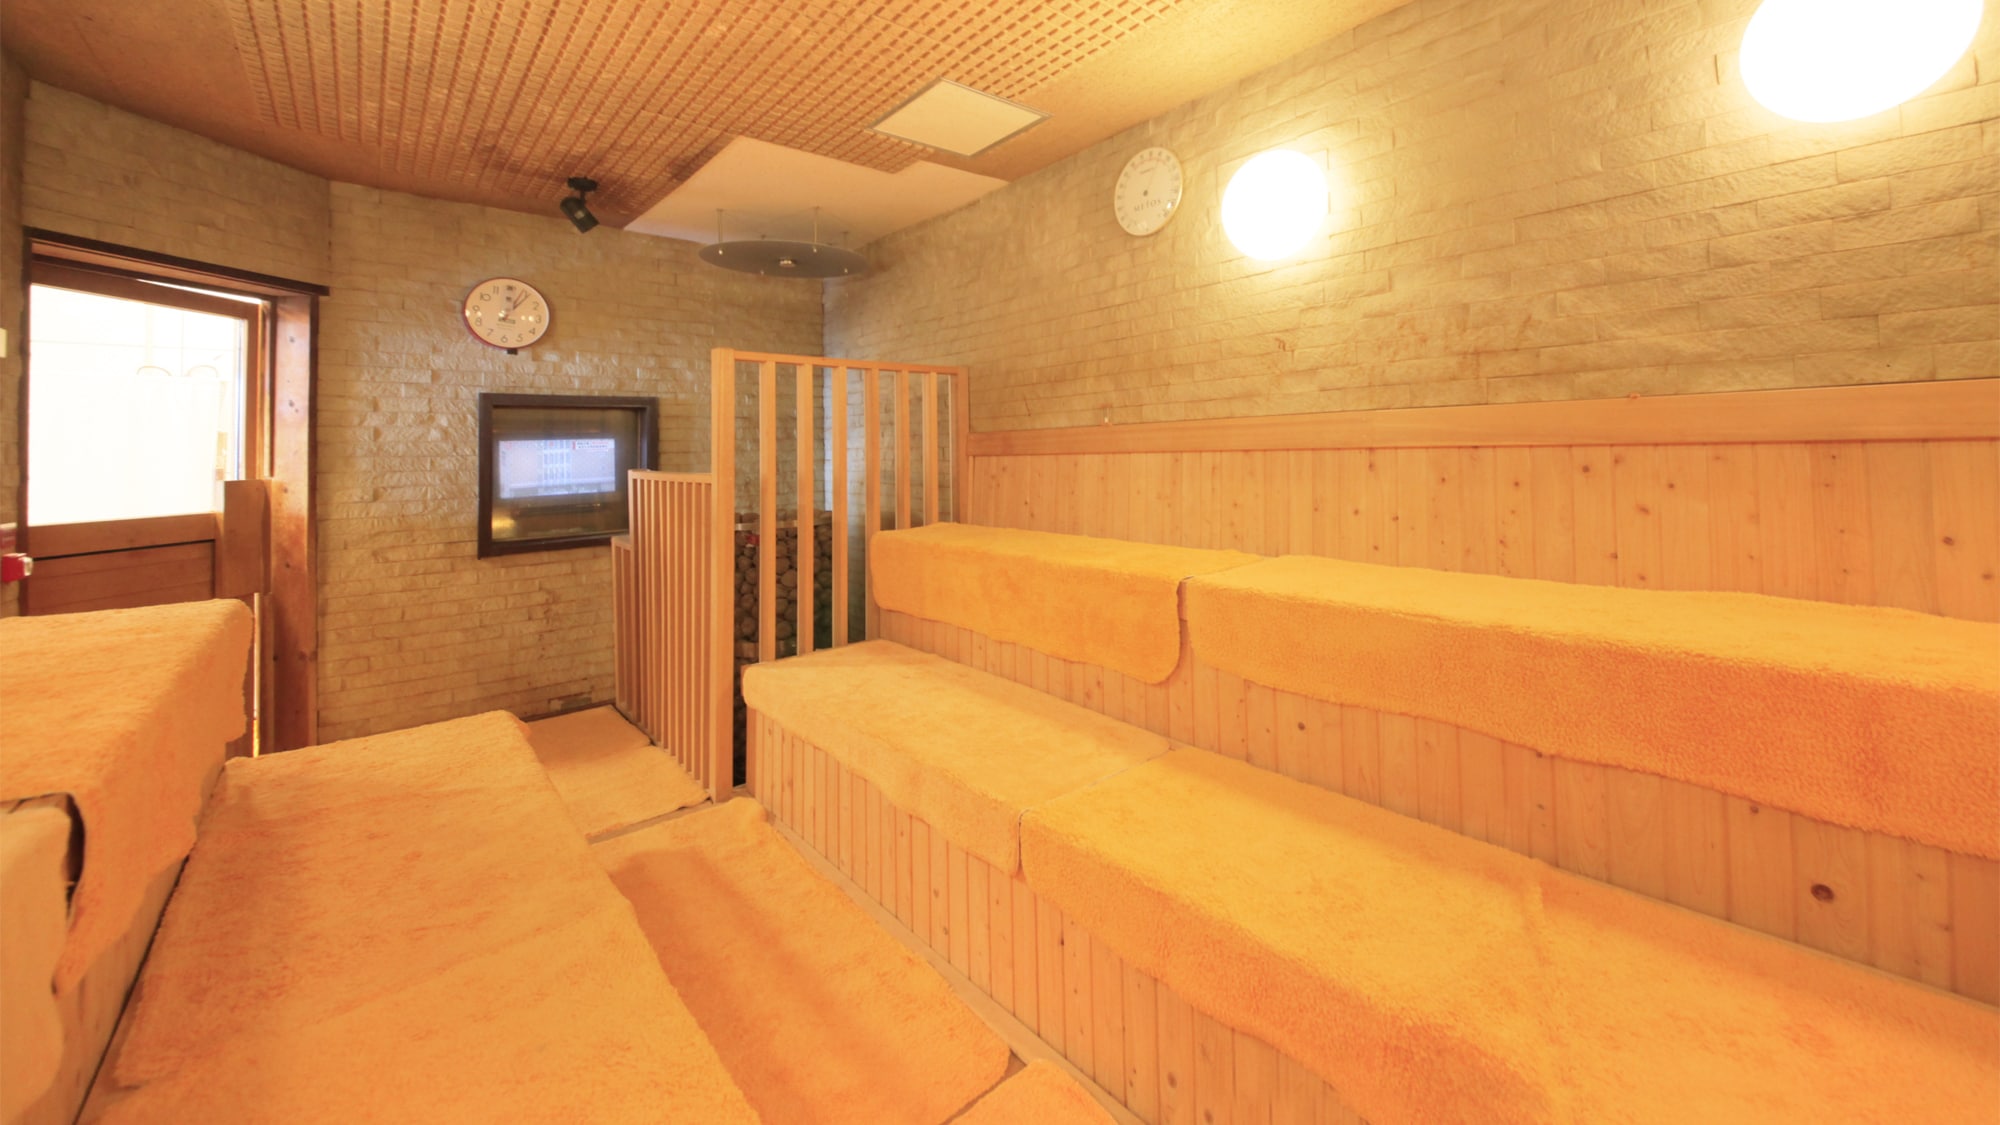 Pemandian / sauna umum yang besar